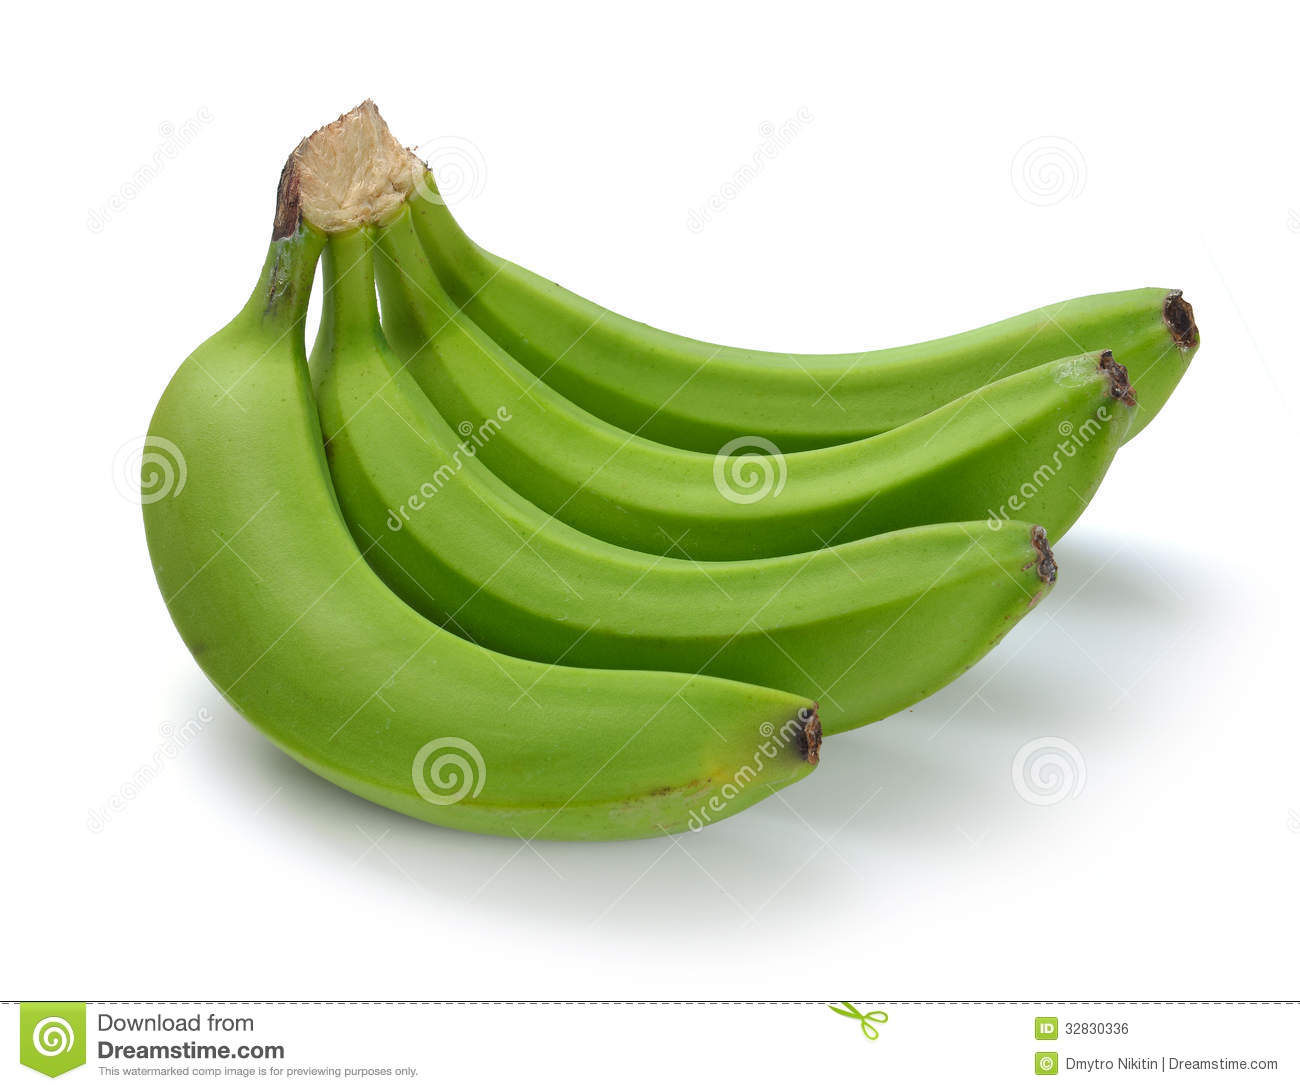 Green banana clipart